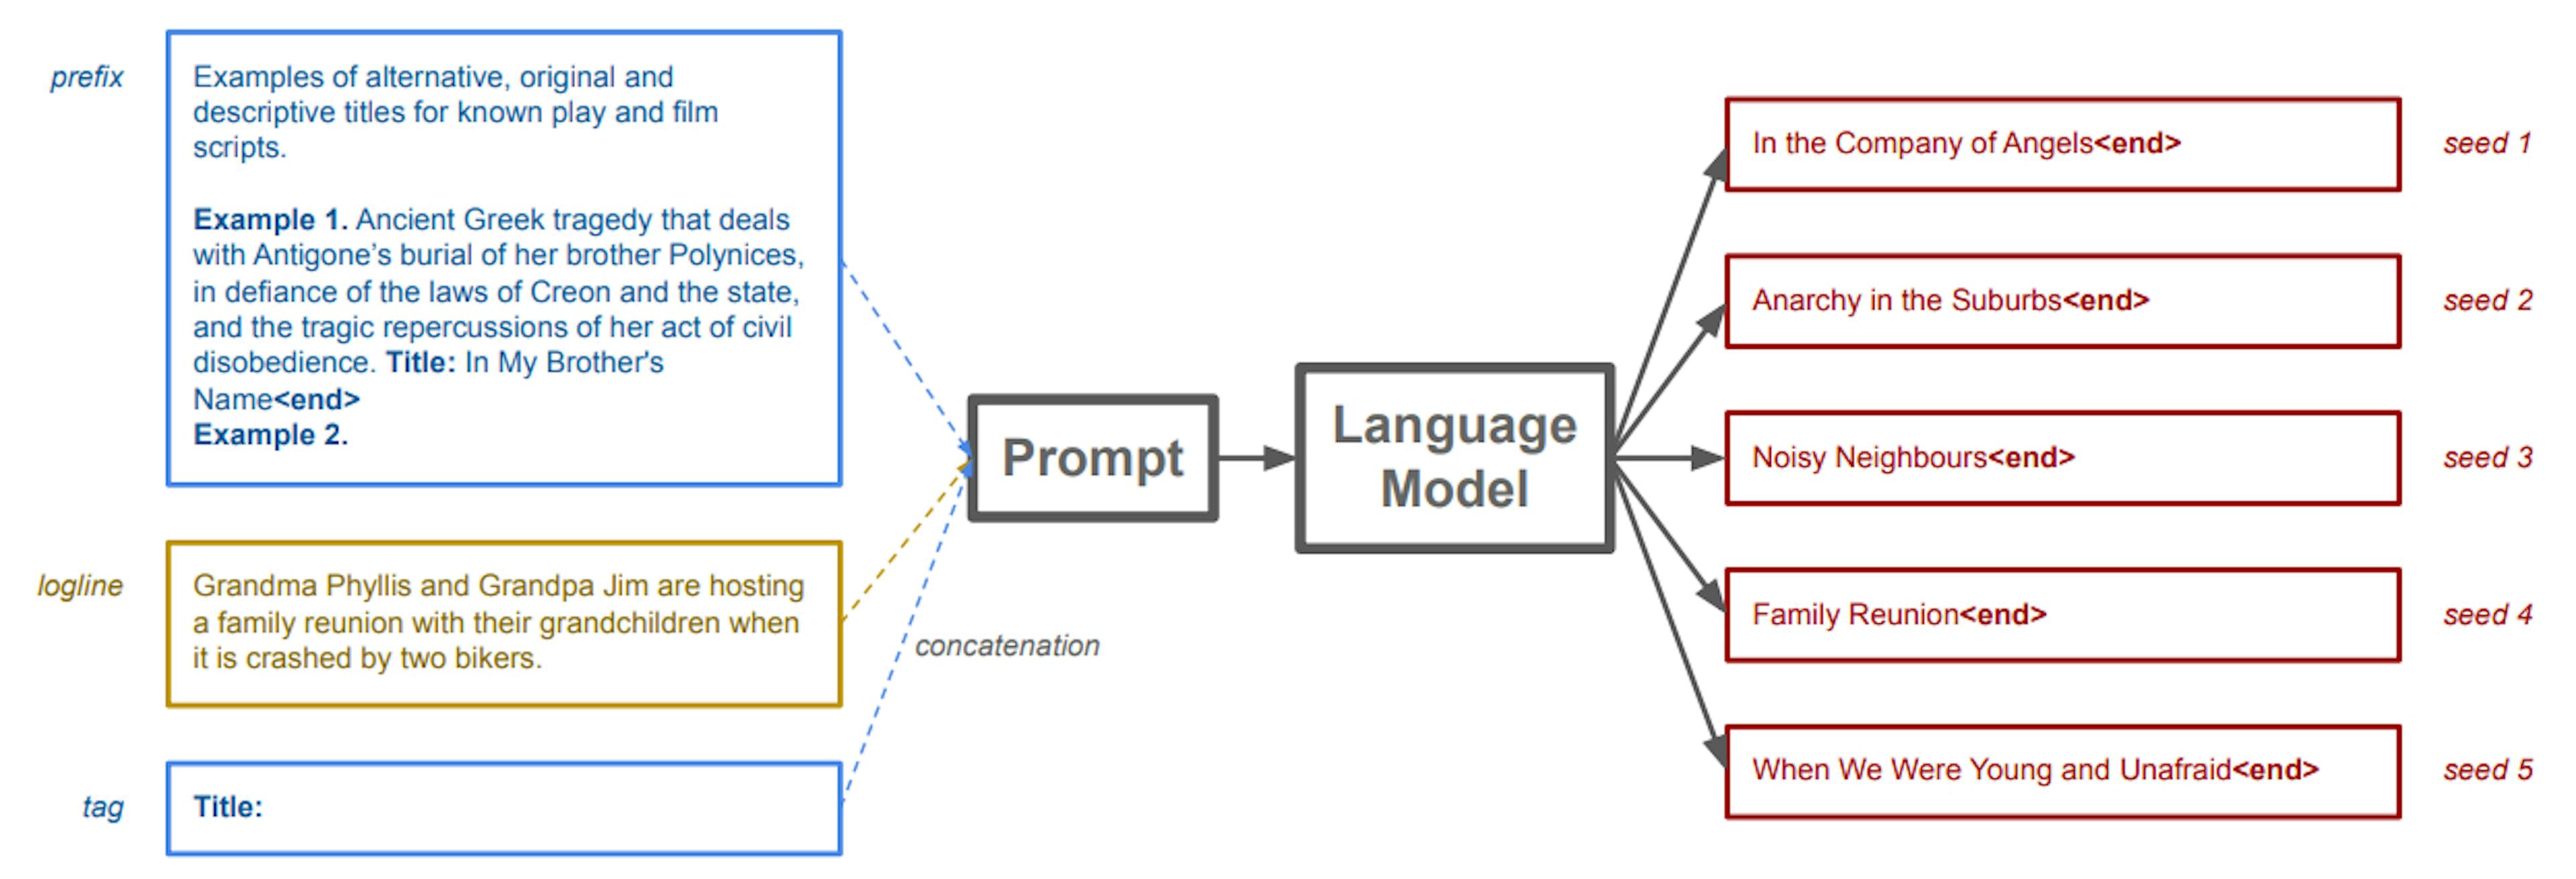 featured image - 통계적 언어 모델 및 계층적 언어 생성 이해